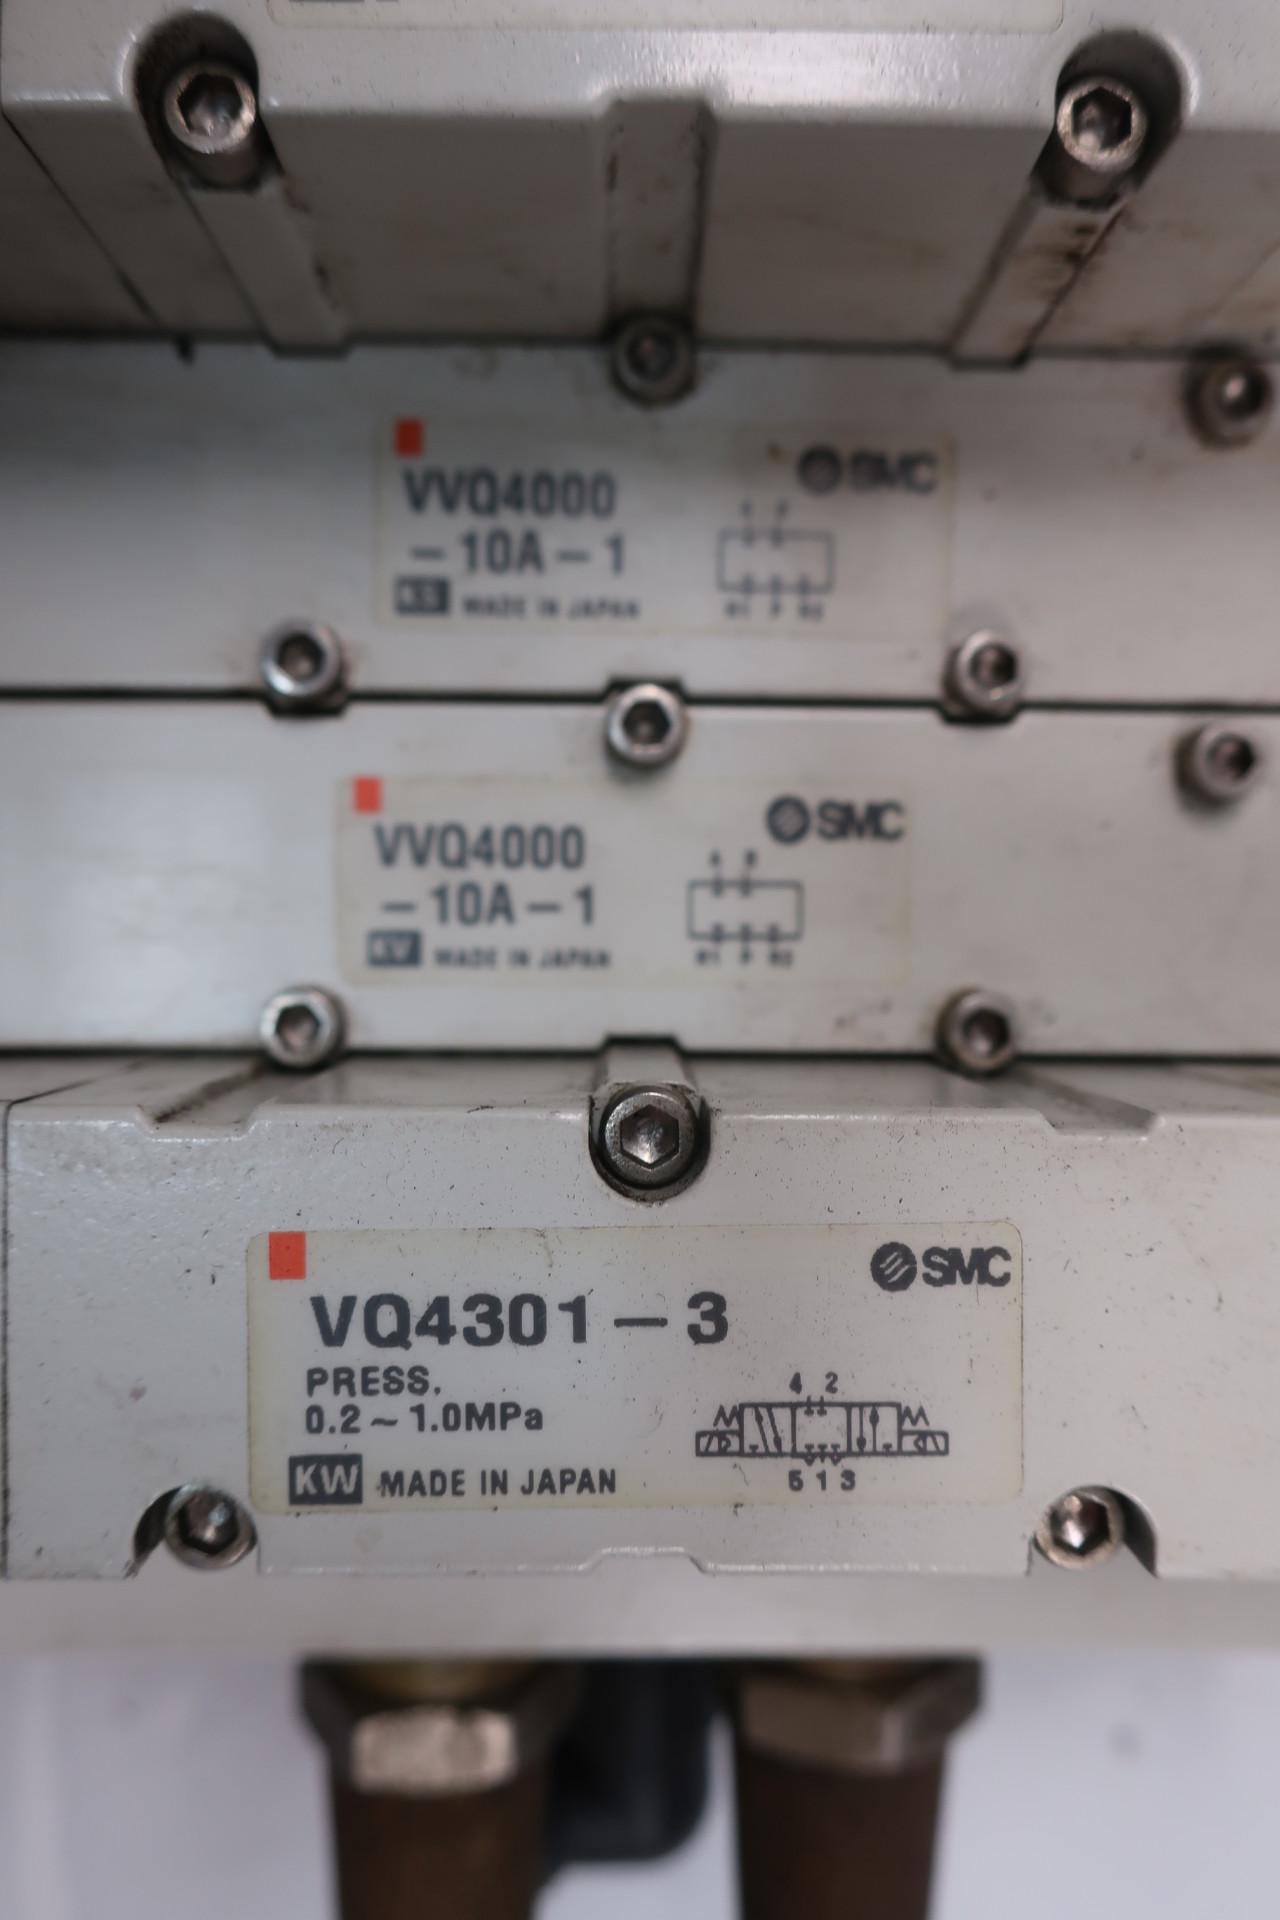 Details about   Smc VVQ4000-10A-1 VQ4301-3 Solenoid Valve Assembly 